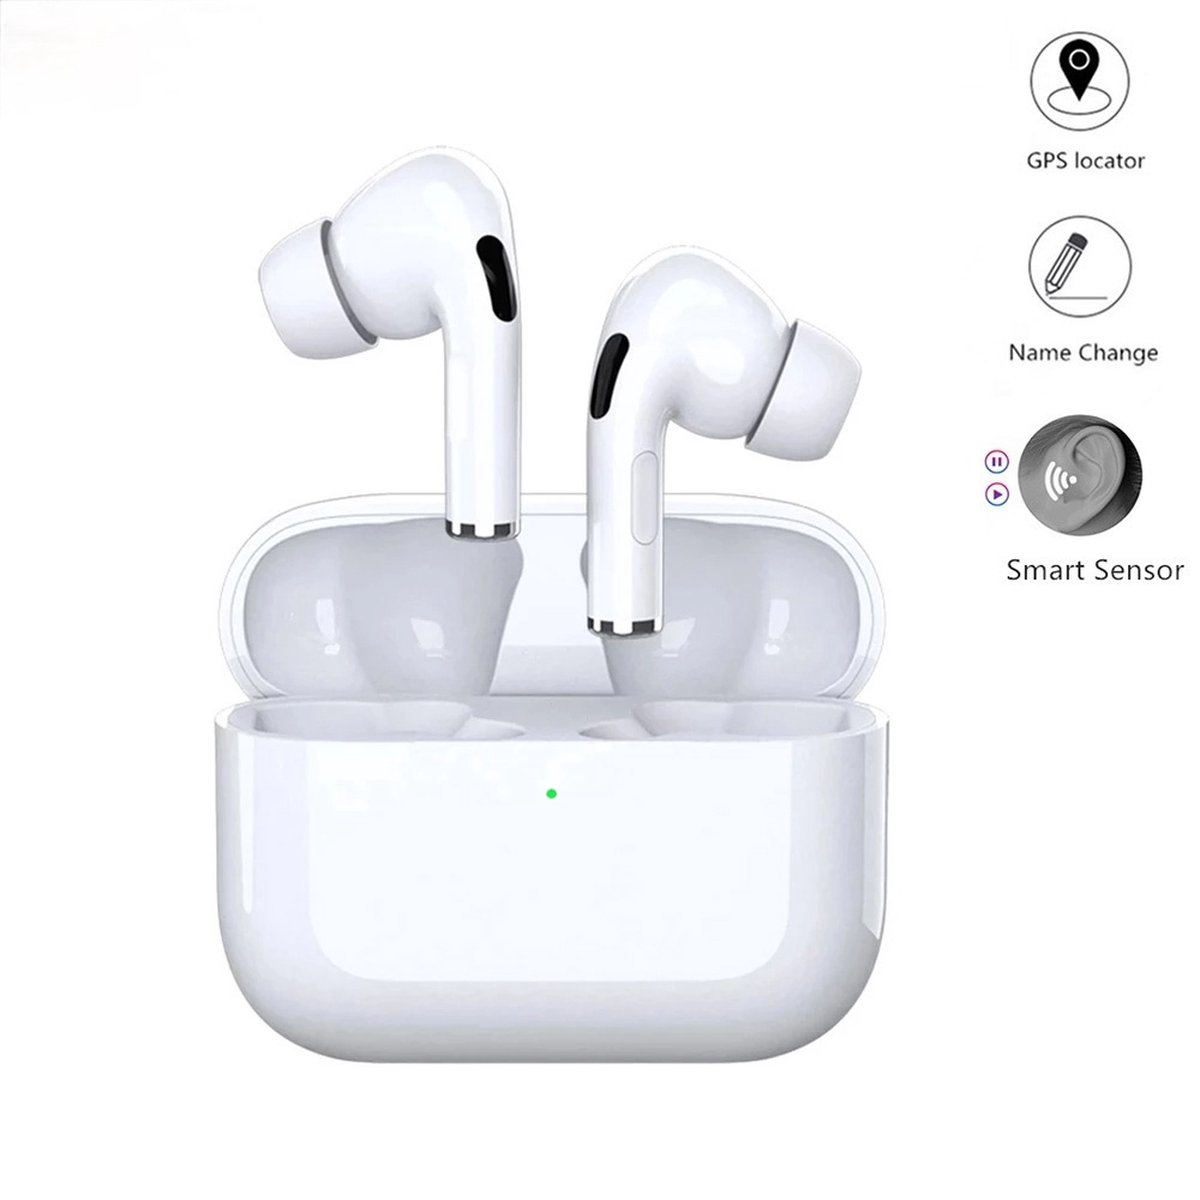 Pro3 Tws Wireless Bt5.0 Earphones - Draadloze oordopjes - Bluetooth 5.0 - Handsfree bellen - Diepe bas - Oplaadcase - In-ear oordopjes - Goedkope draadloze oordopjes - Compatibel met iOS en Android - Hoofdtelefoon - Touchbediening